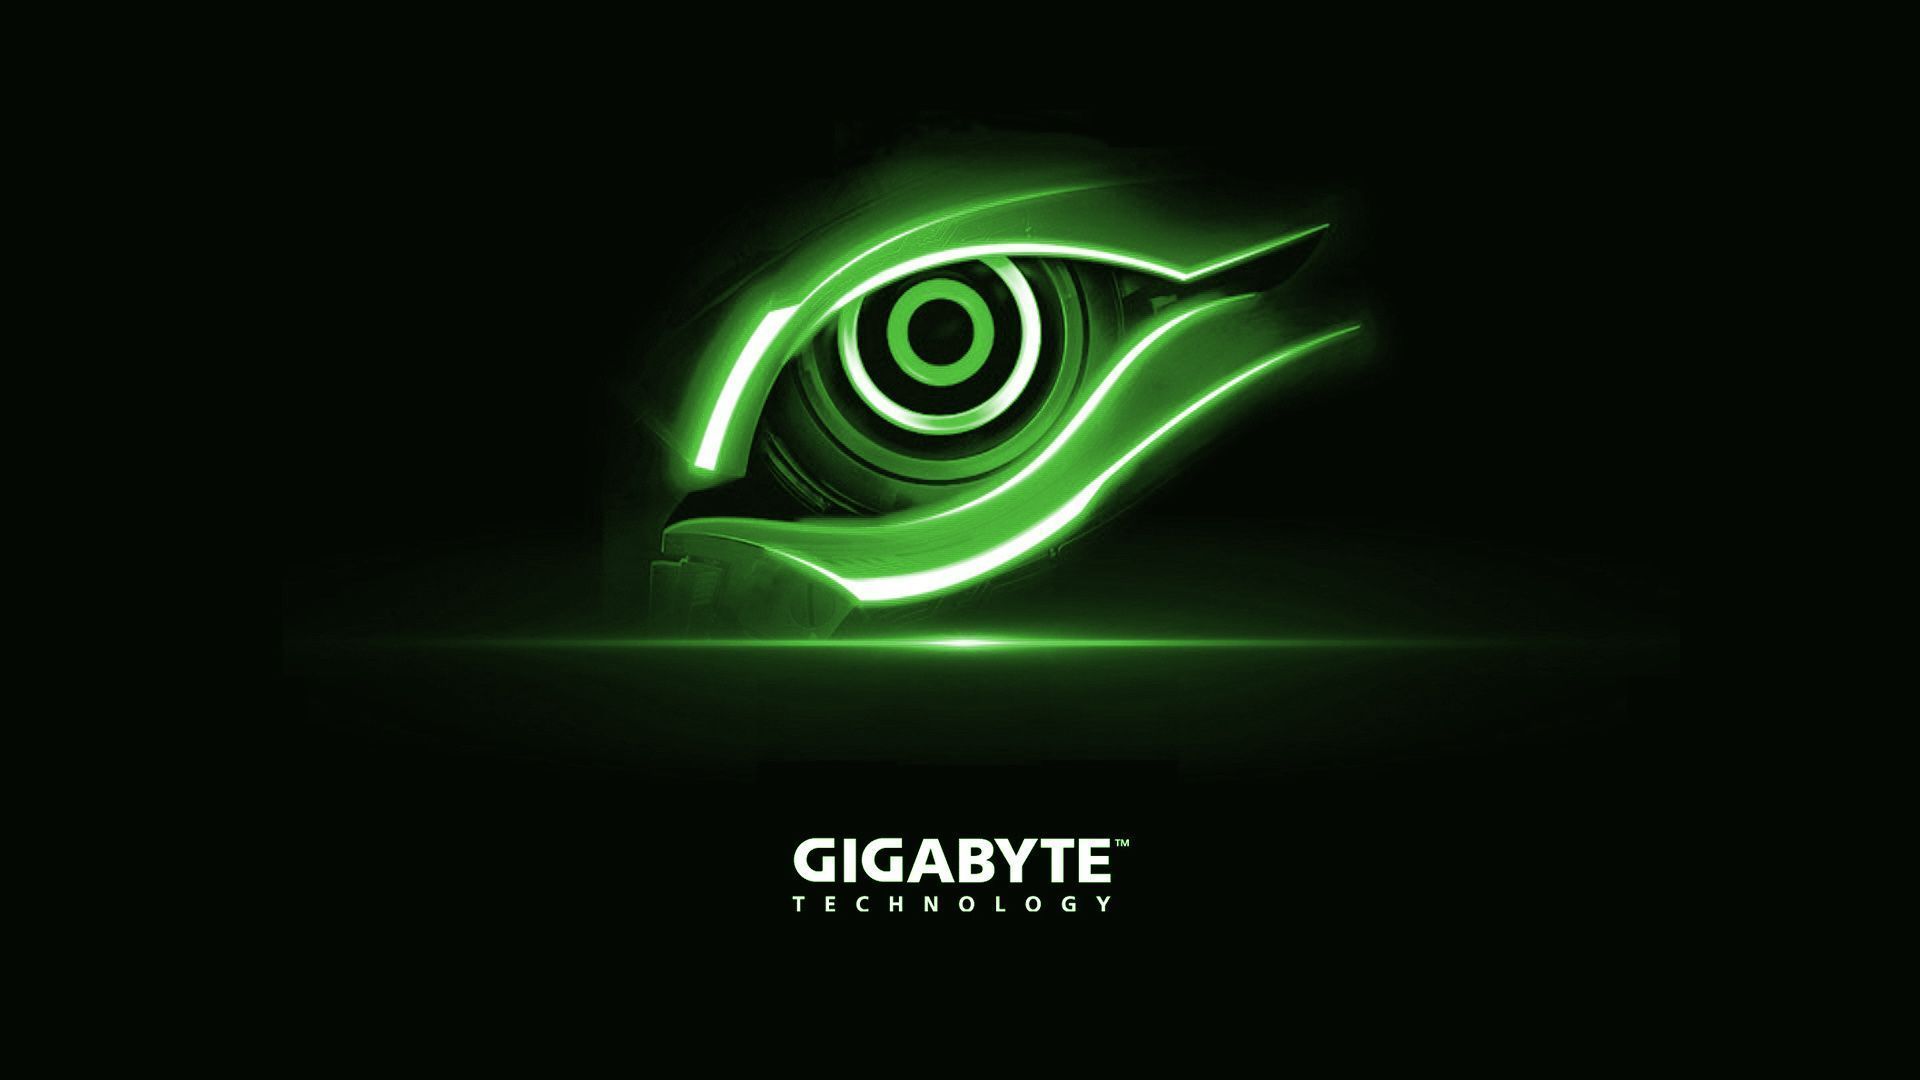 Gigabyte-Technology-Green-Eye-Logo-Wallpaper.jpg